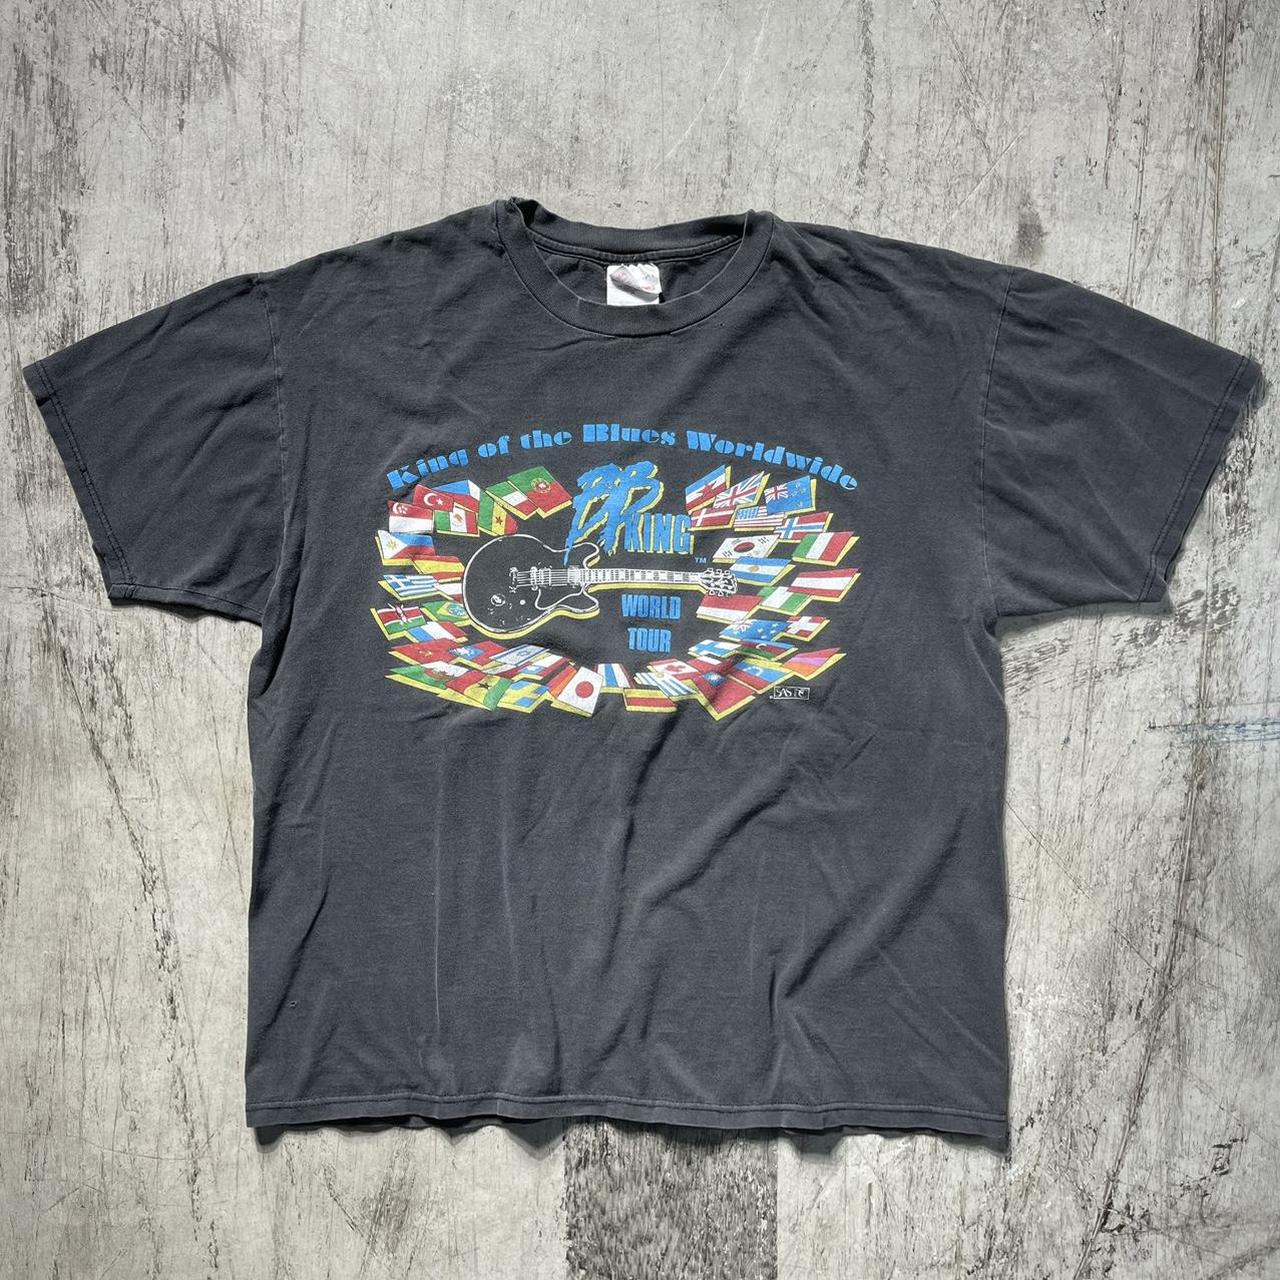 Vintage BB King blues world tour t-shirt Pinholes... - Depop